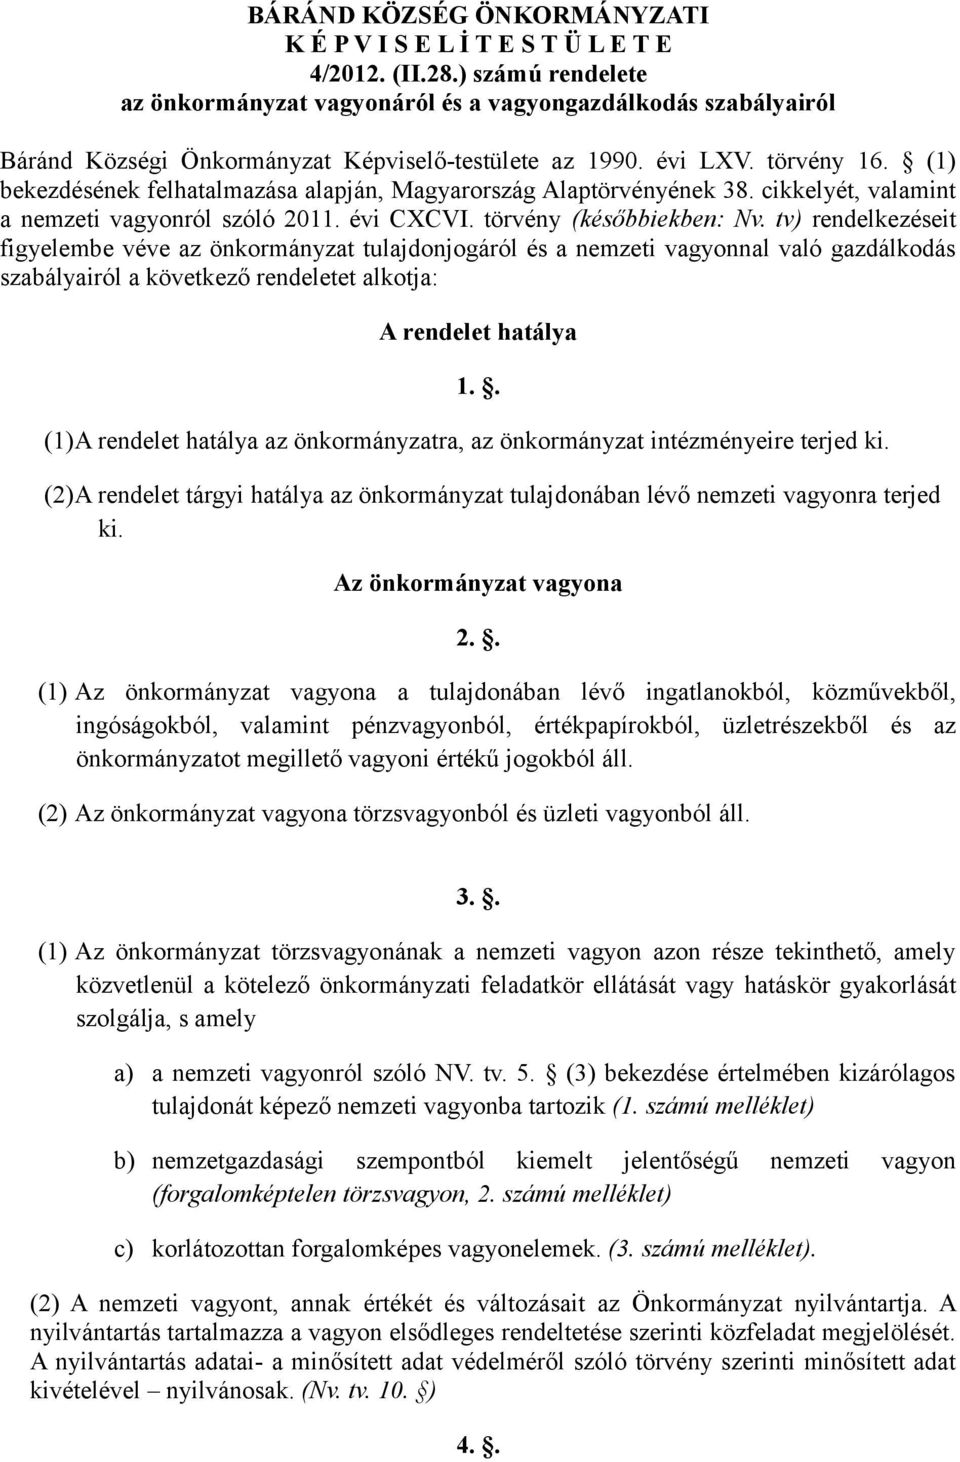 (1) bekezdésének felhatalmazása alapján, Magyarország Alaptörvényének 38. cikkelyét, valamint a nemzeti vagyonról szóló 2011. évi CXCVI. törvény (későbbiekben: Nv.